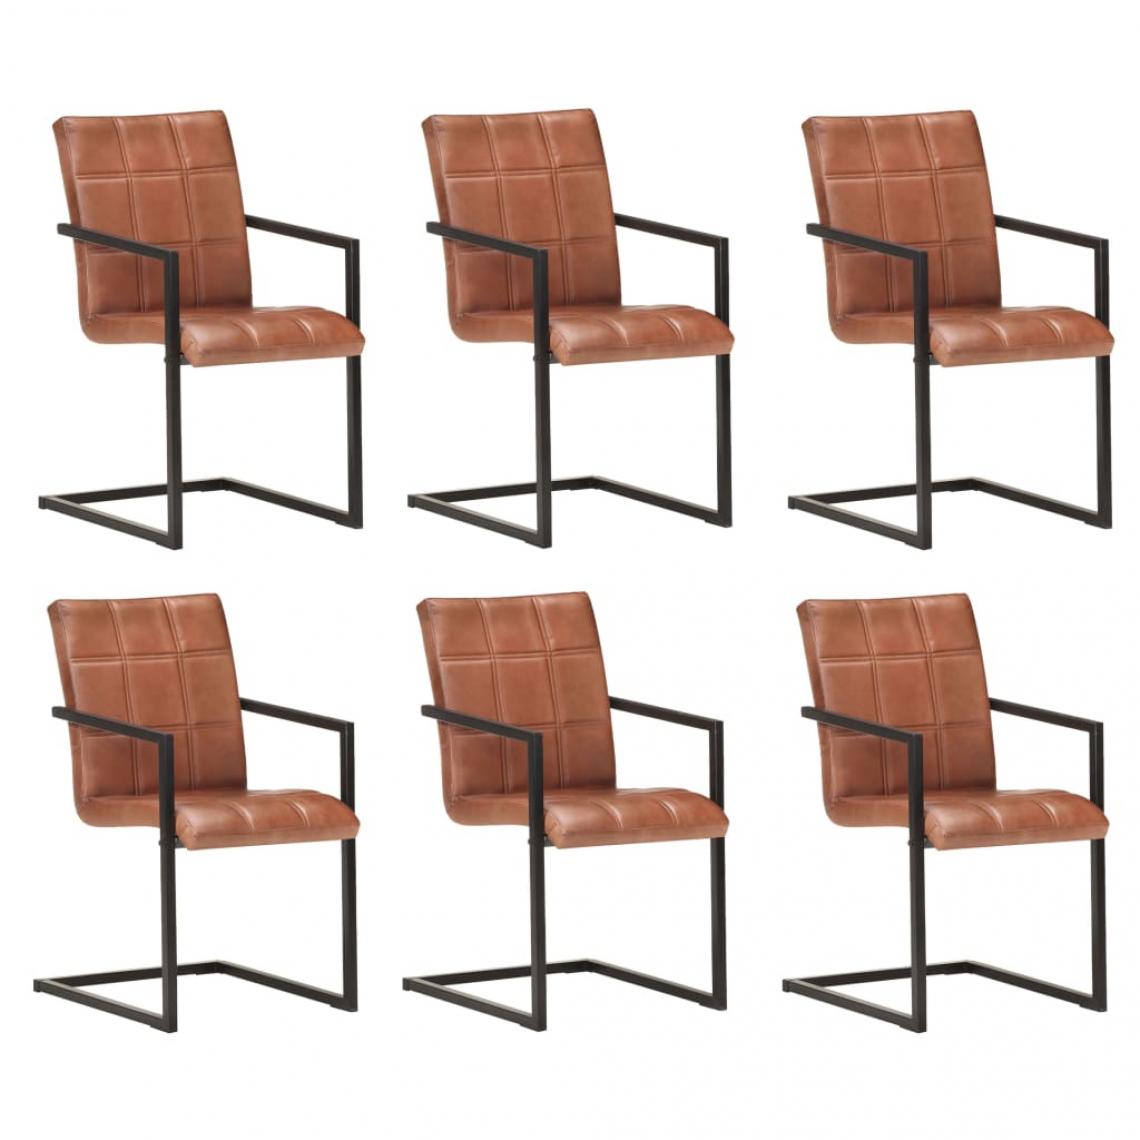 Decoshop26 - Lot de 6 chaises de salle à manger cuisine cantilever design rétro cuir véritable marron CDS022297 - Chaises